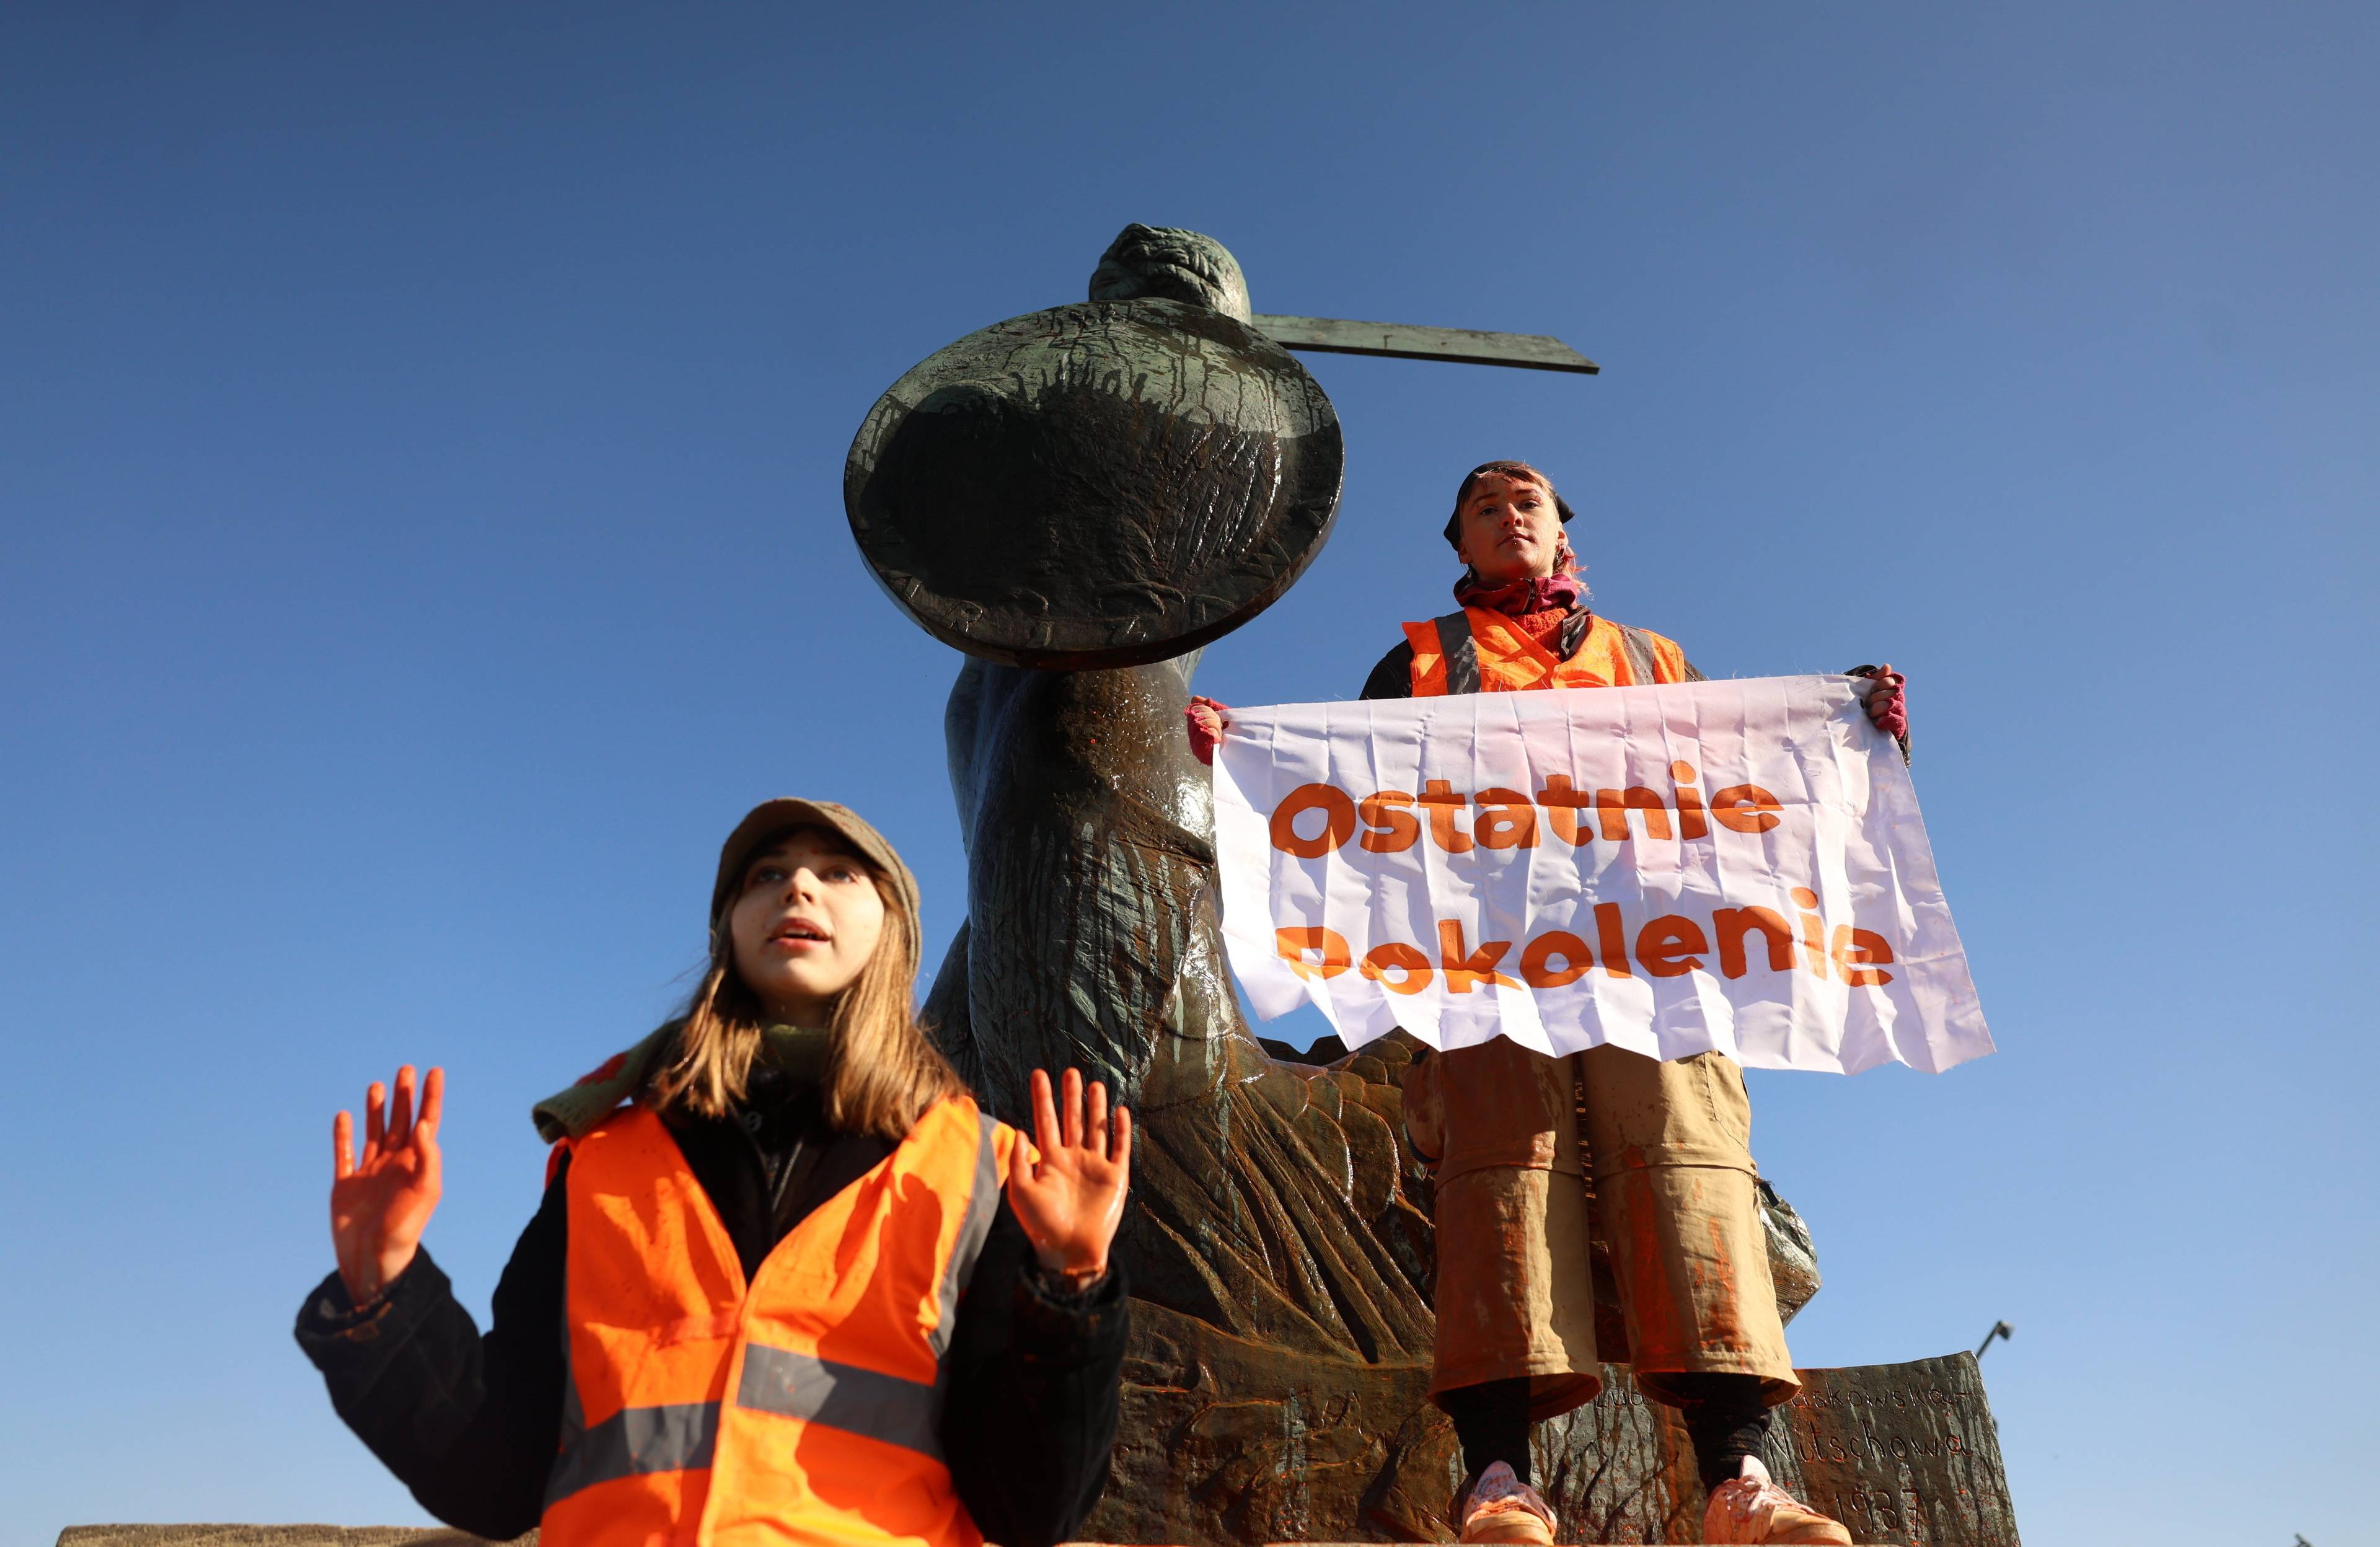 dwójka aktywistów, jedno z nich trzyma napis "ostatnie pokolenie", stoją na pomniku syrenki